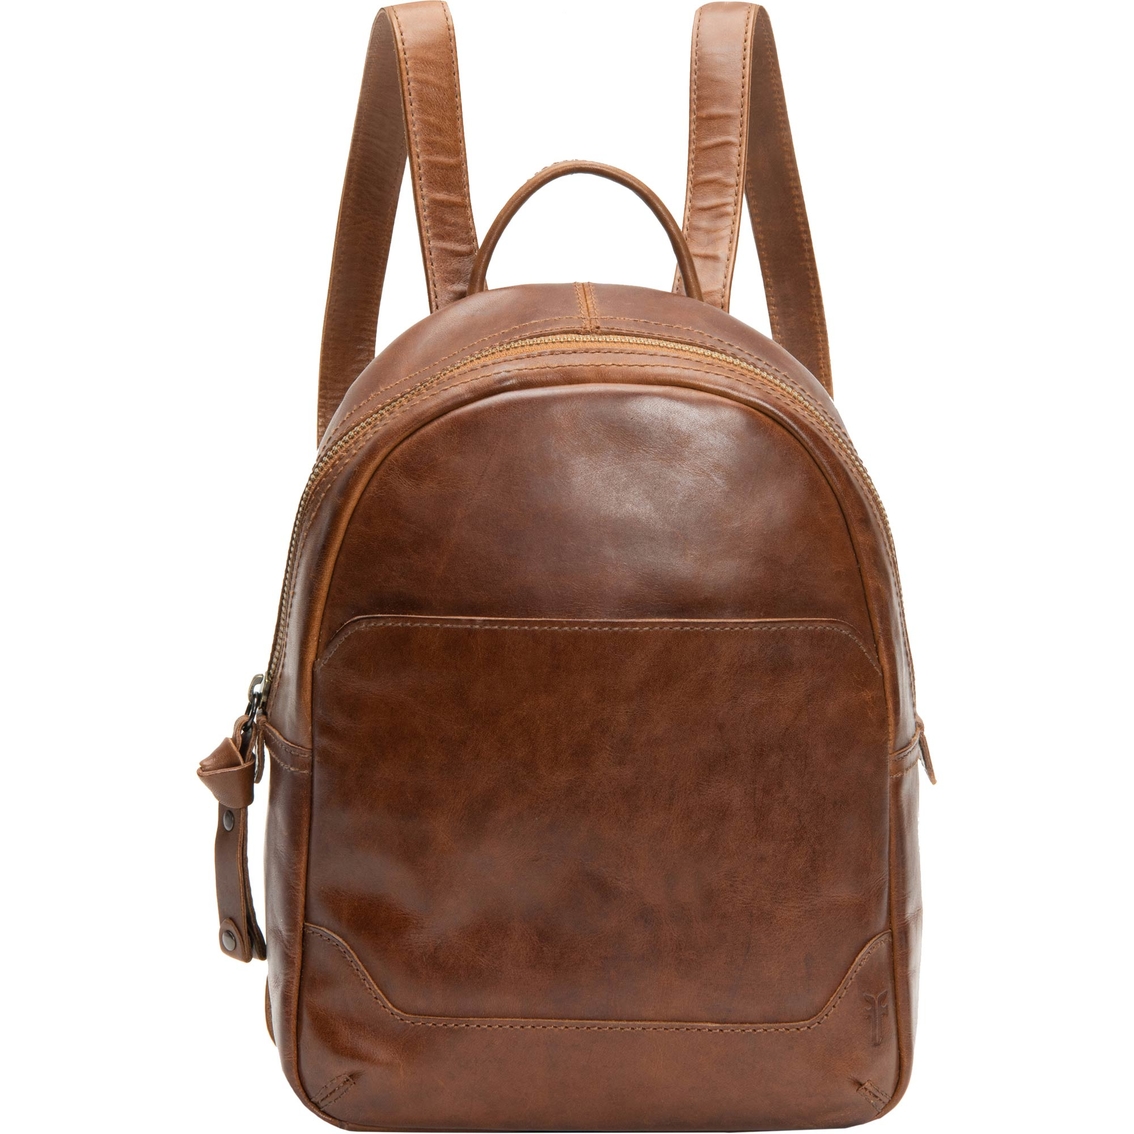 Frye Melissa Medium Backpack | Backpacks | Clothing & Accessories ...